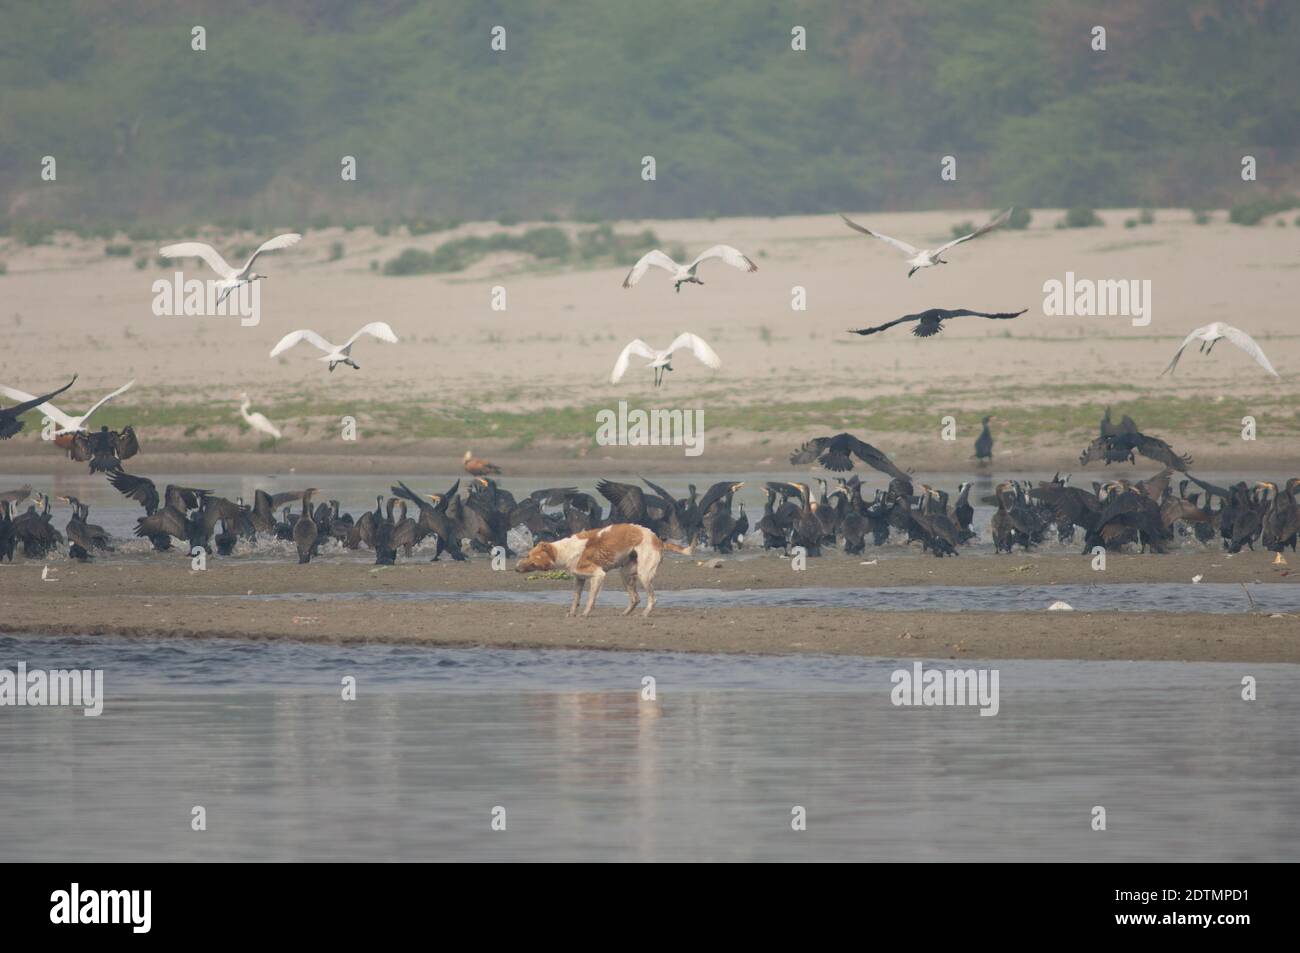 Cane feriale Canis familiaris, grandi cormorani Phalacrocorax carbo e spatole eurasiane Platalea leucorodia. Fiume Yamuna. Agra. India. Foto Stock